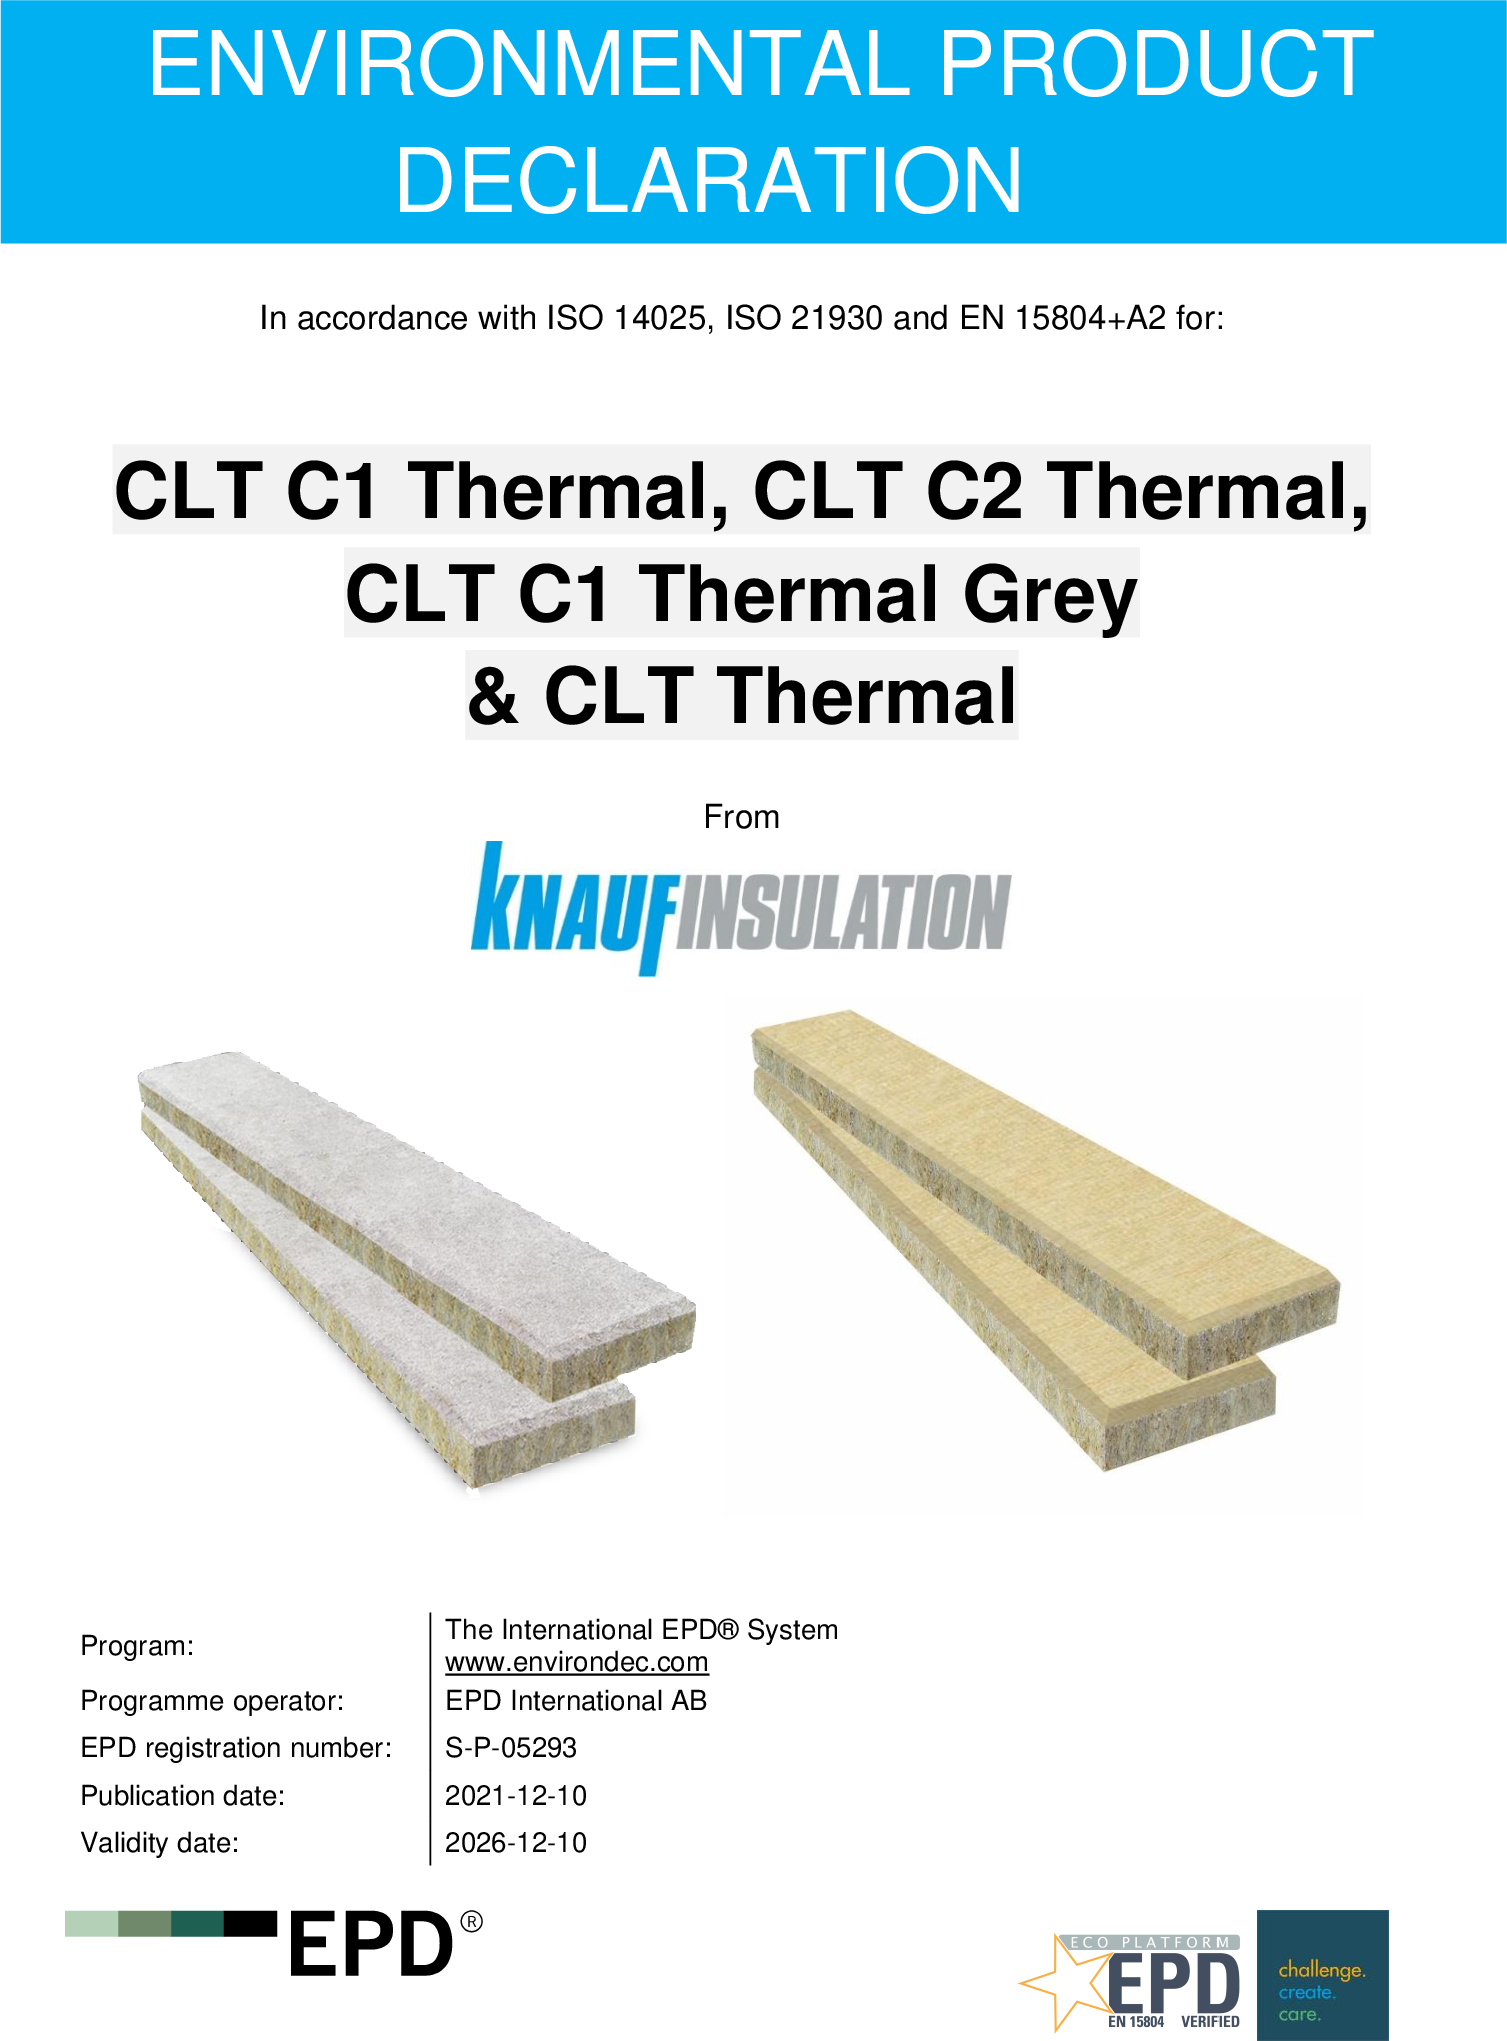 CLT C1 Thermal, CLT C2 Thermal, CLT C1 Thermal Grey & CLT Thermal